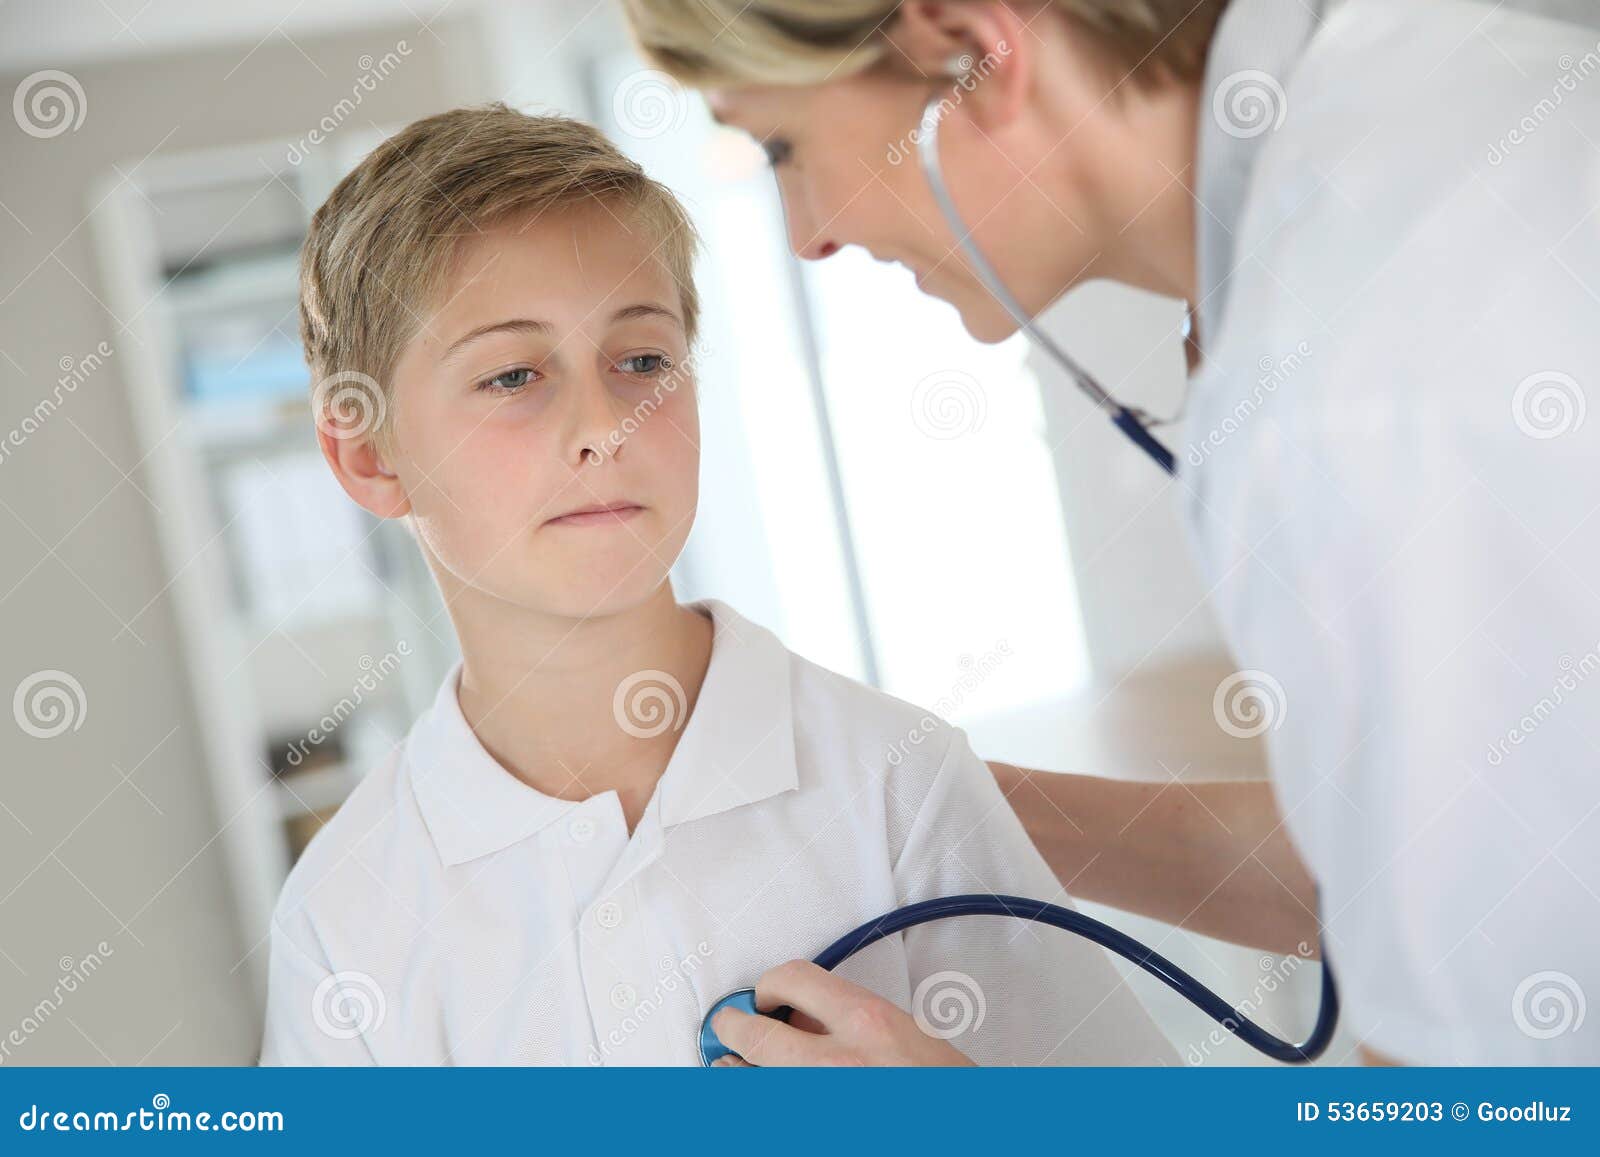 Врач осматривает мальчиков. Врач осматривает мальчика. Мальчик и стетоскоп. Врачихи осматривают мальчика. Мальчик со стетоскопом фото.